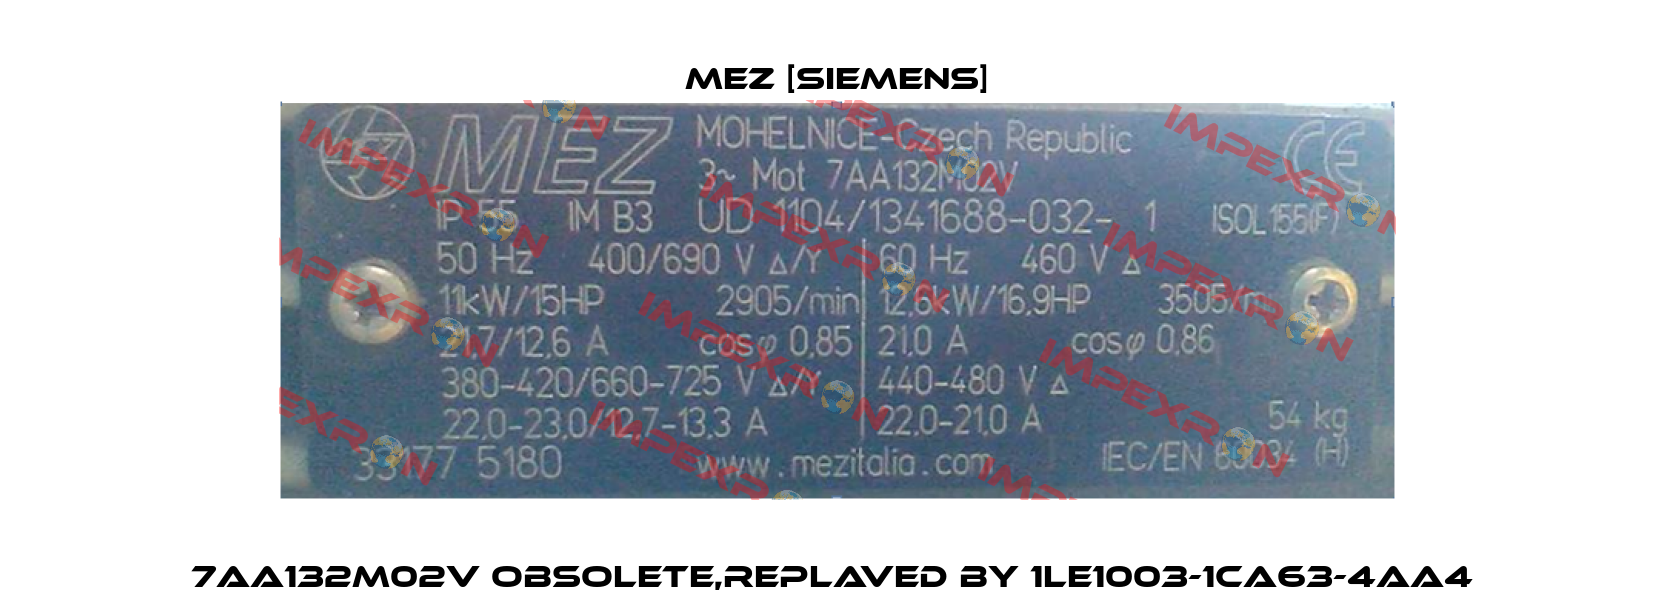 7AA132M02V obsolete,replaved by 1LE1003-1CA63-4AA4  MEZ [Siemens]